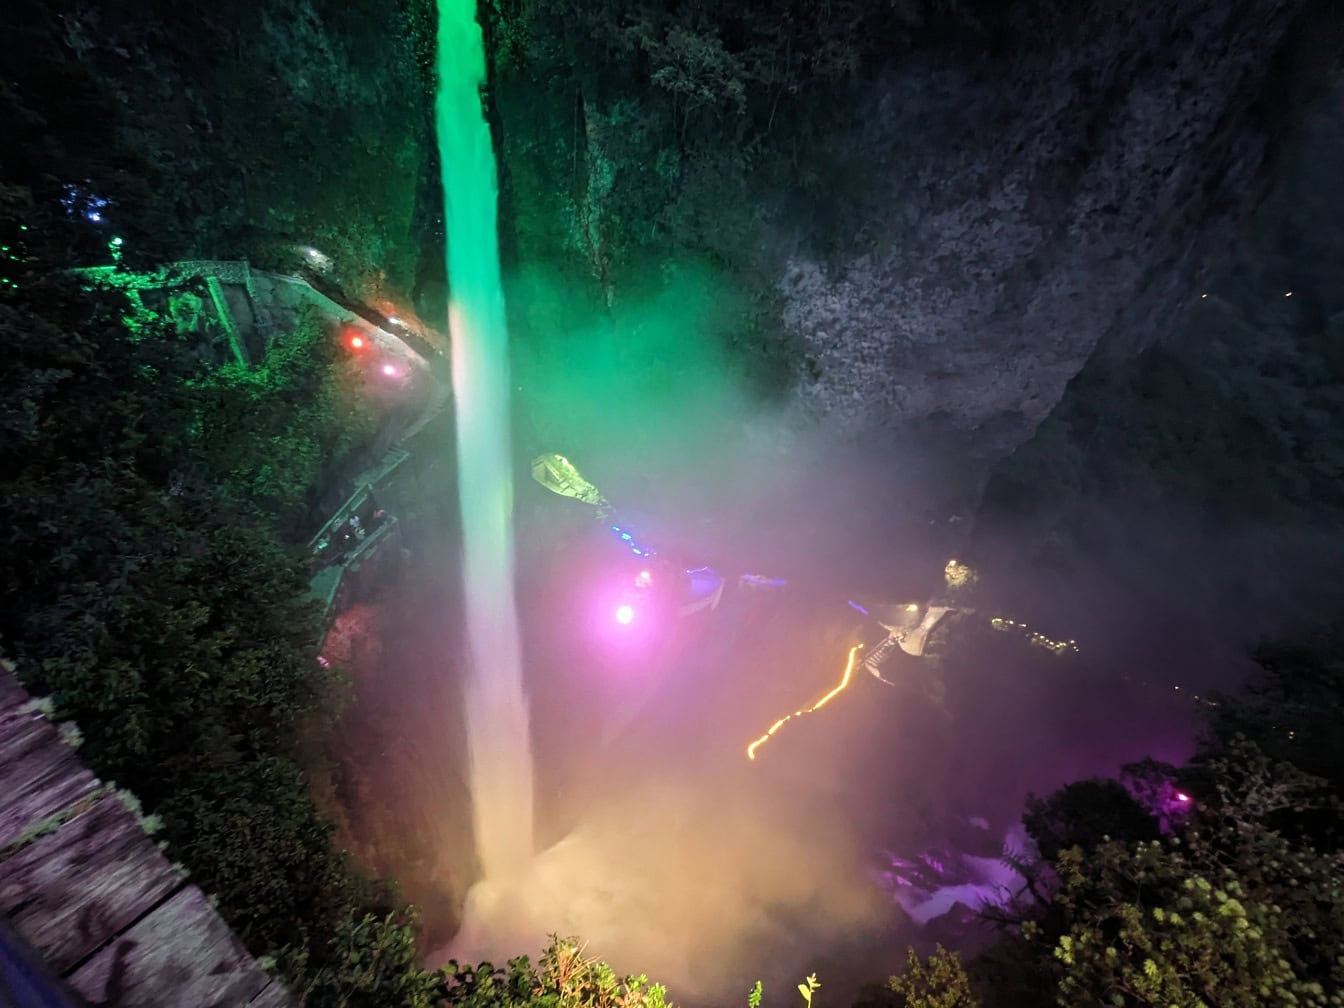 Air terjun Iblis diterangi oleh lampu warna-warni di malam hari, keajaiban alam dan objek wisata di taman alam Ekuador